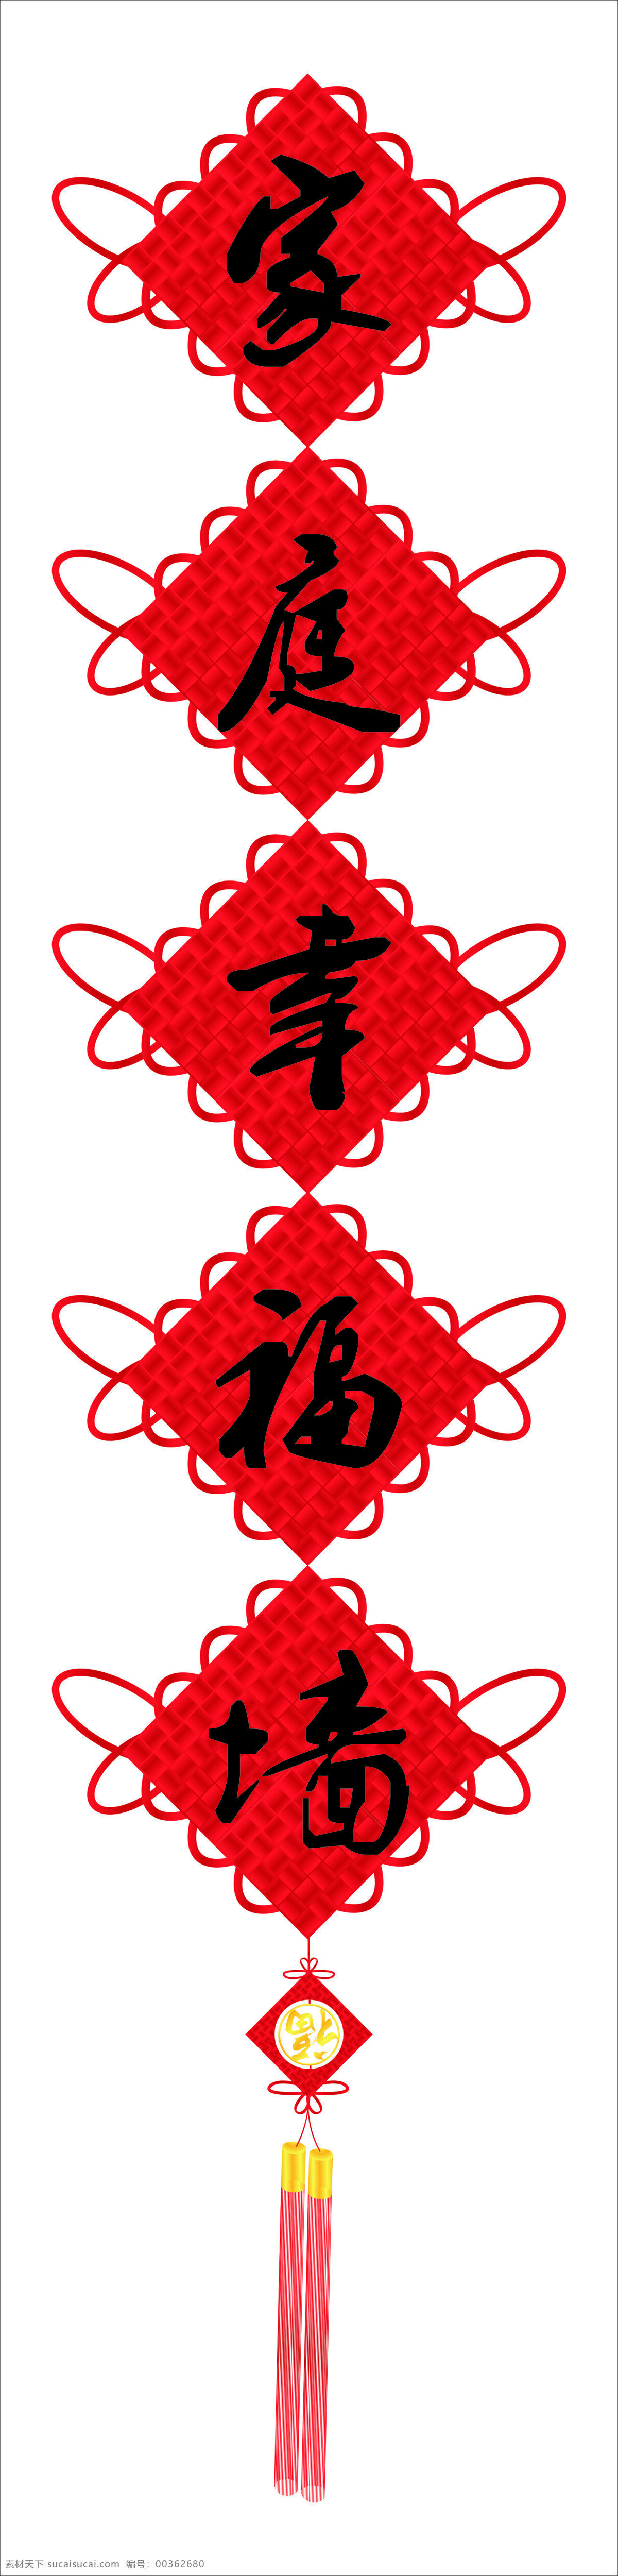 家庭幸福墙 楼梯墙 照片墙设计 中国结 红色喜庆 文化艺术 传统文化